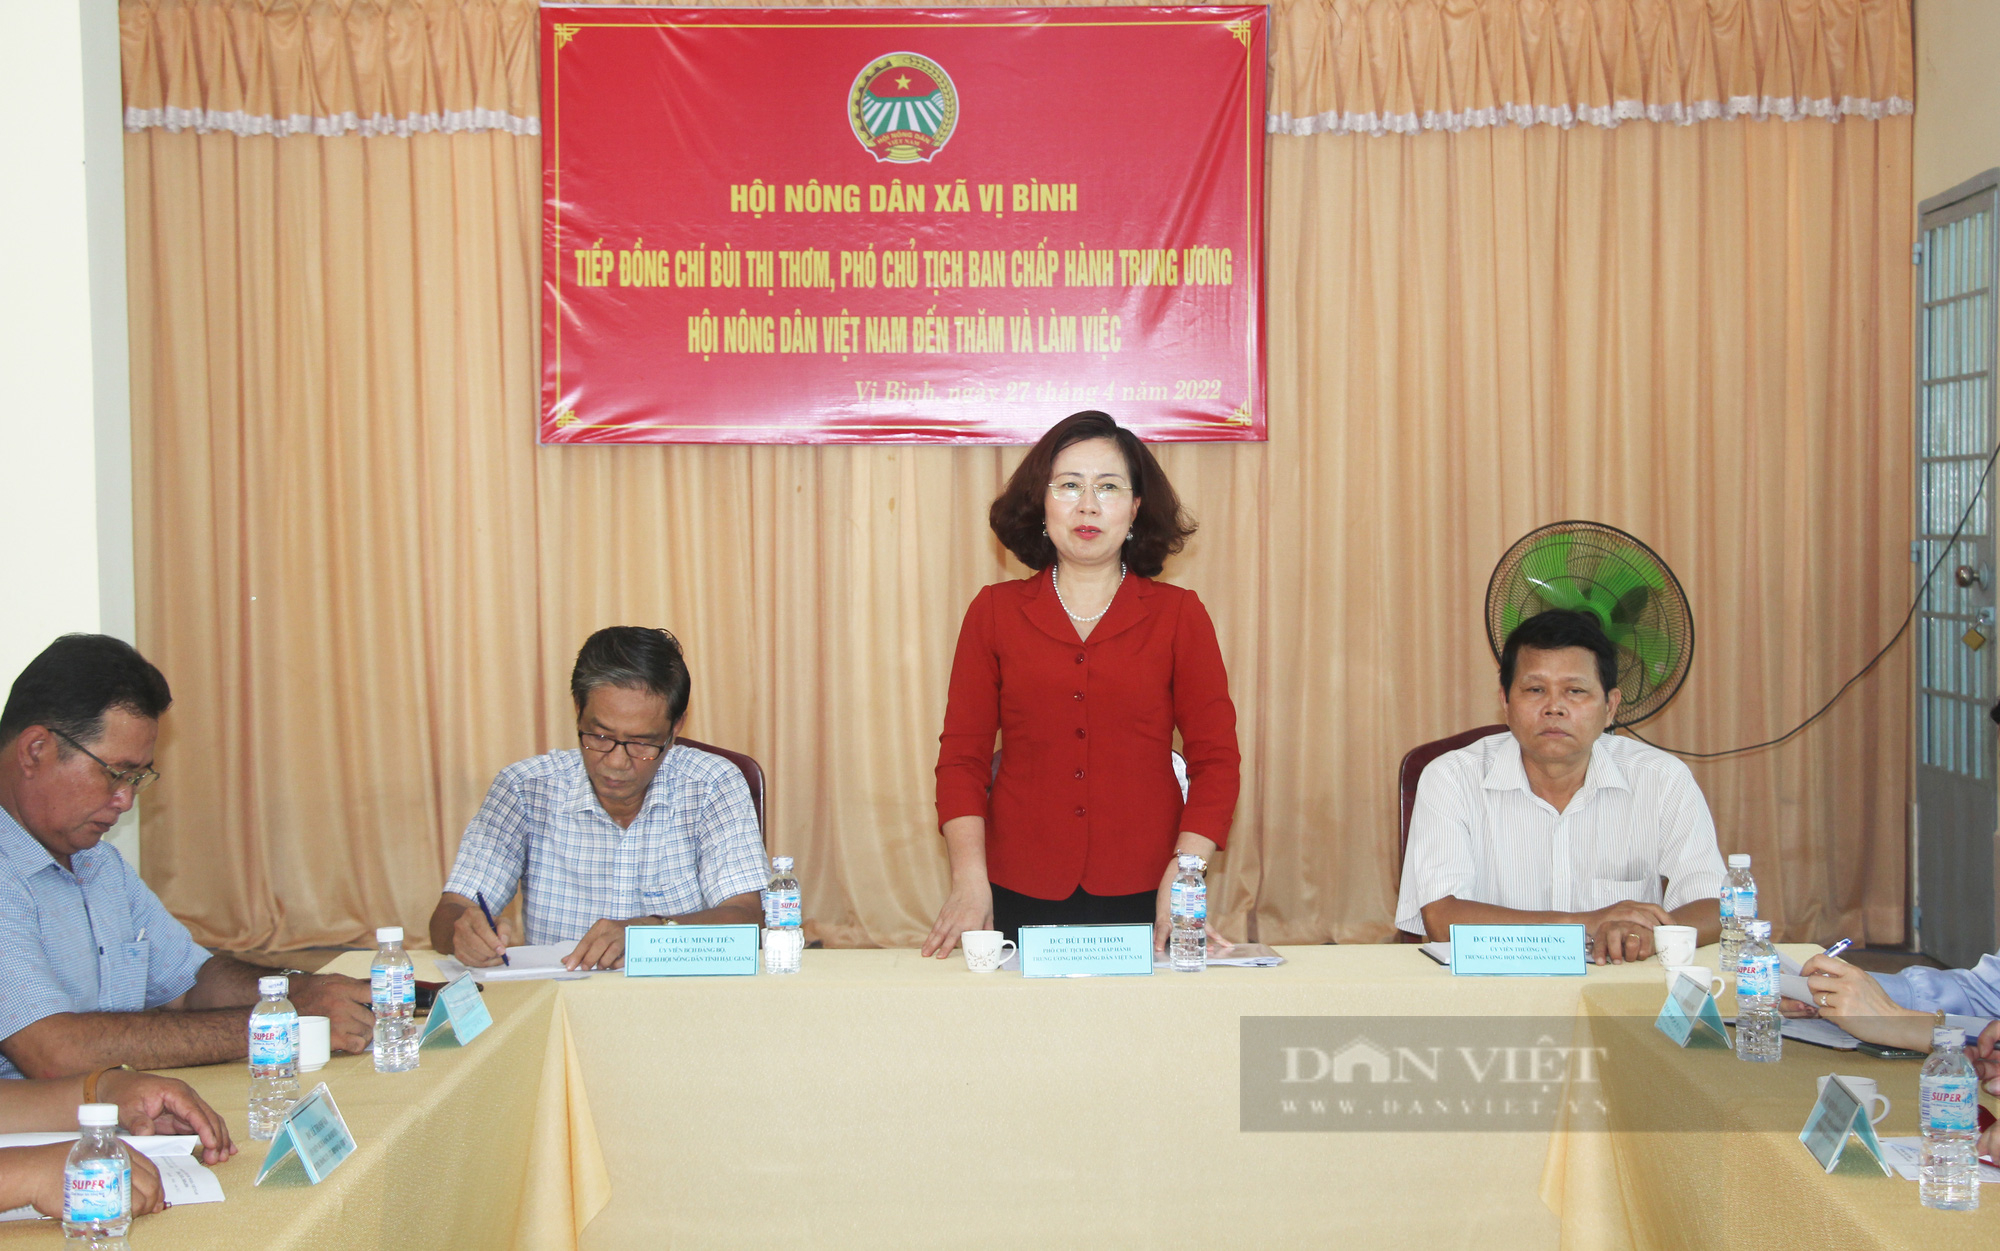 Phó Chủ tịch Hội NDVN Bùi Thị Thơm làm việc tại Hậu Giang: Cần quan tâm hơn đến tiêu thụ nông sản cho nông dân- Ảnh 4.